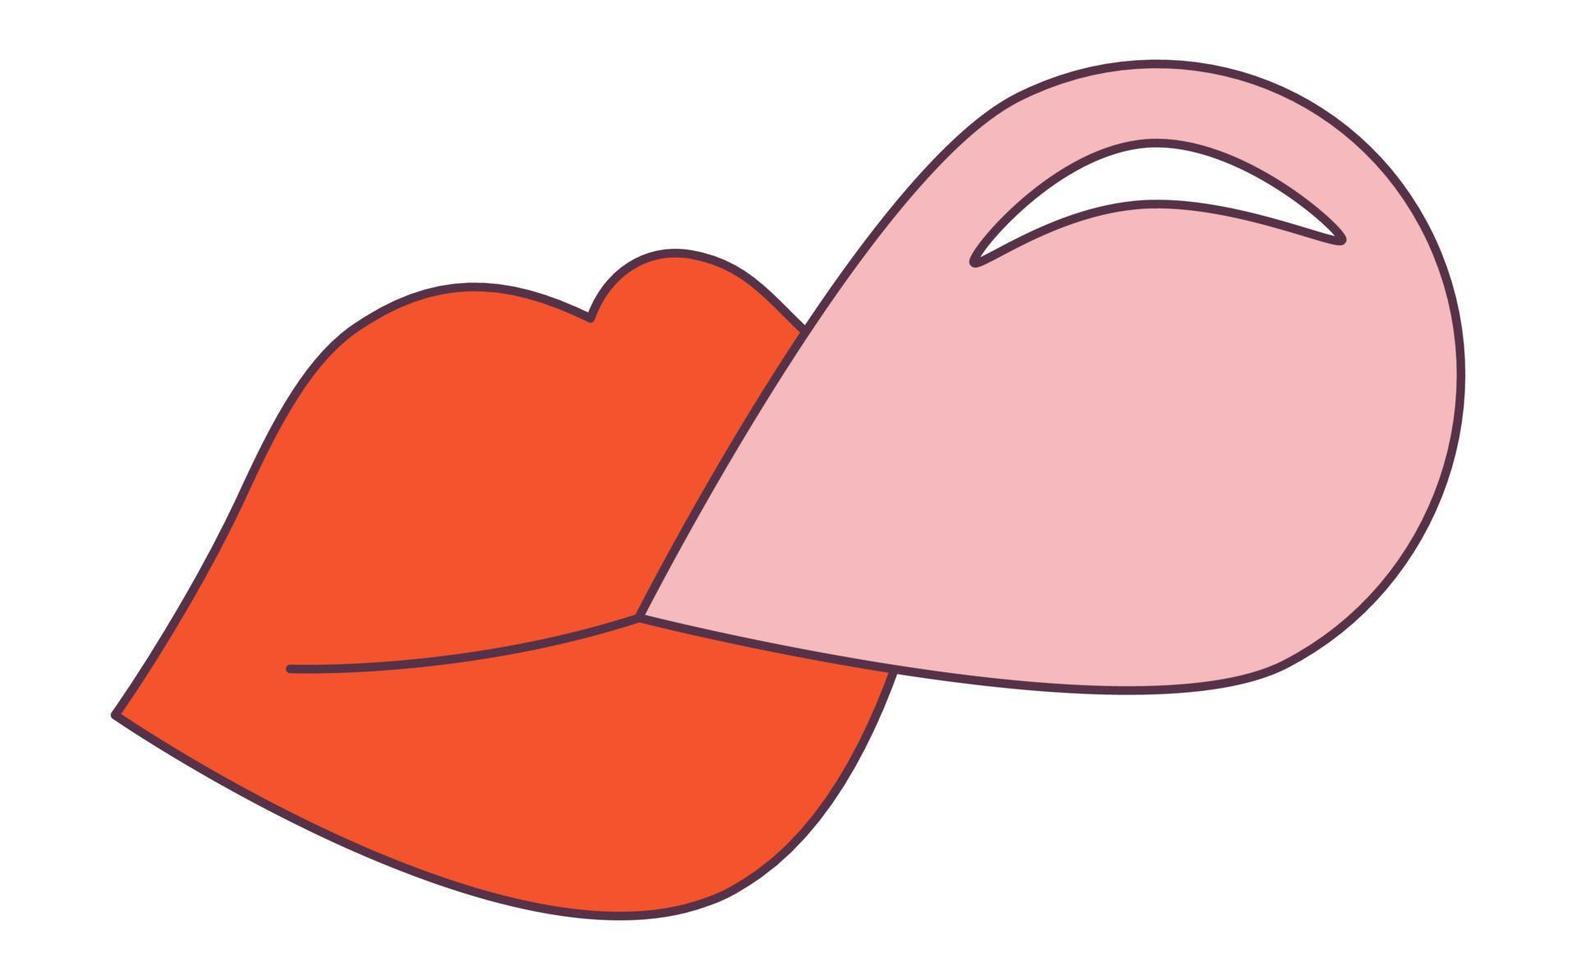 rétro des années 70 groovy hippie autocollant lèvre bubblegum. élément de dessin animé psychédélique - illustration funky dans un style hippie vintage. illustration vectorielle plate pour bannière, flyer, invitation, carte. vecteur